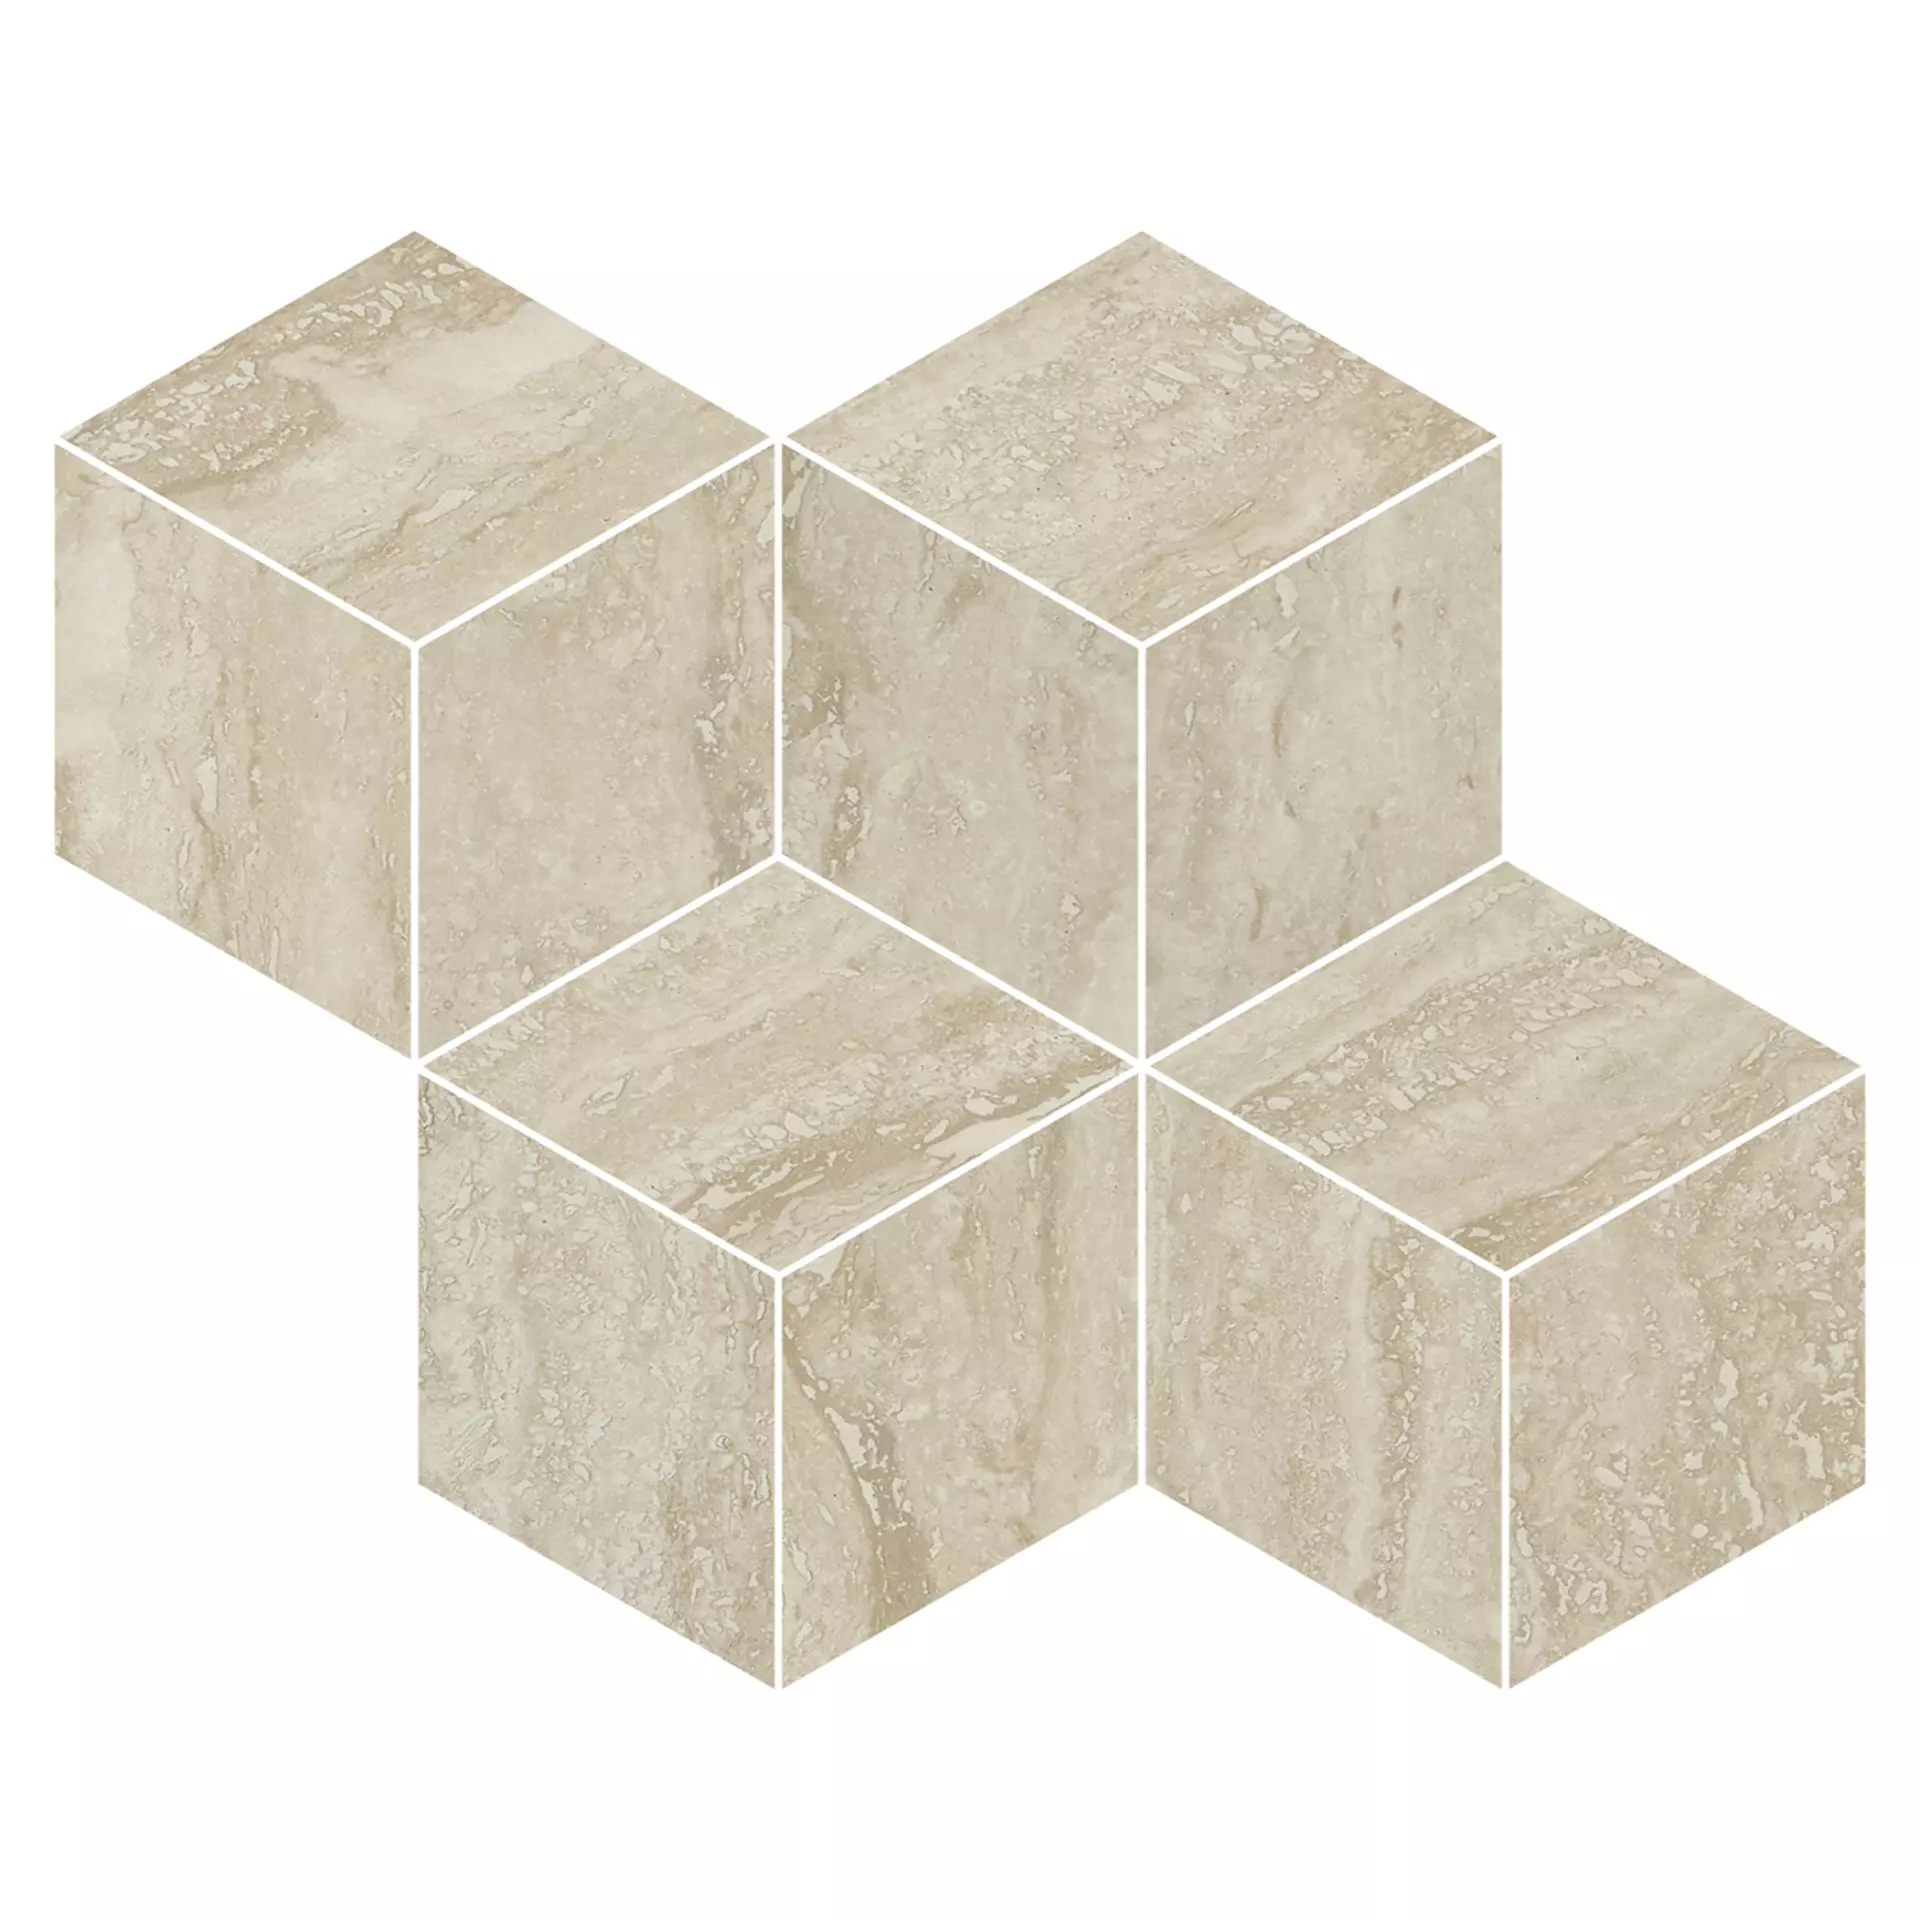 Refin Prestigio Travertino Beige Lucido Beige OO30 glaenzend 30,4x35,2cm Mosaik Cube rektifiziert 9mm